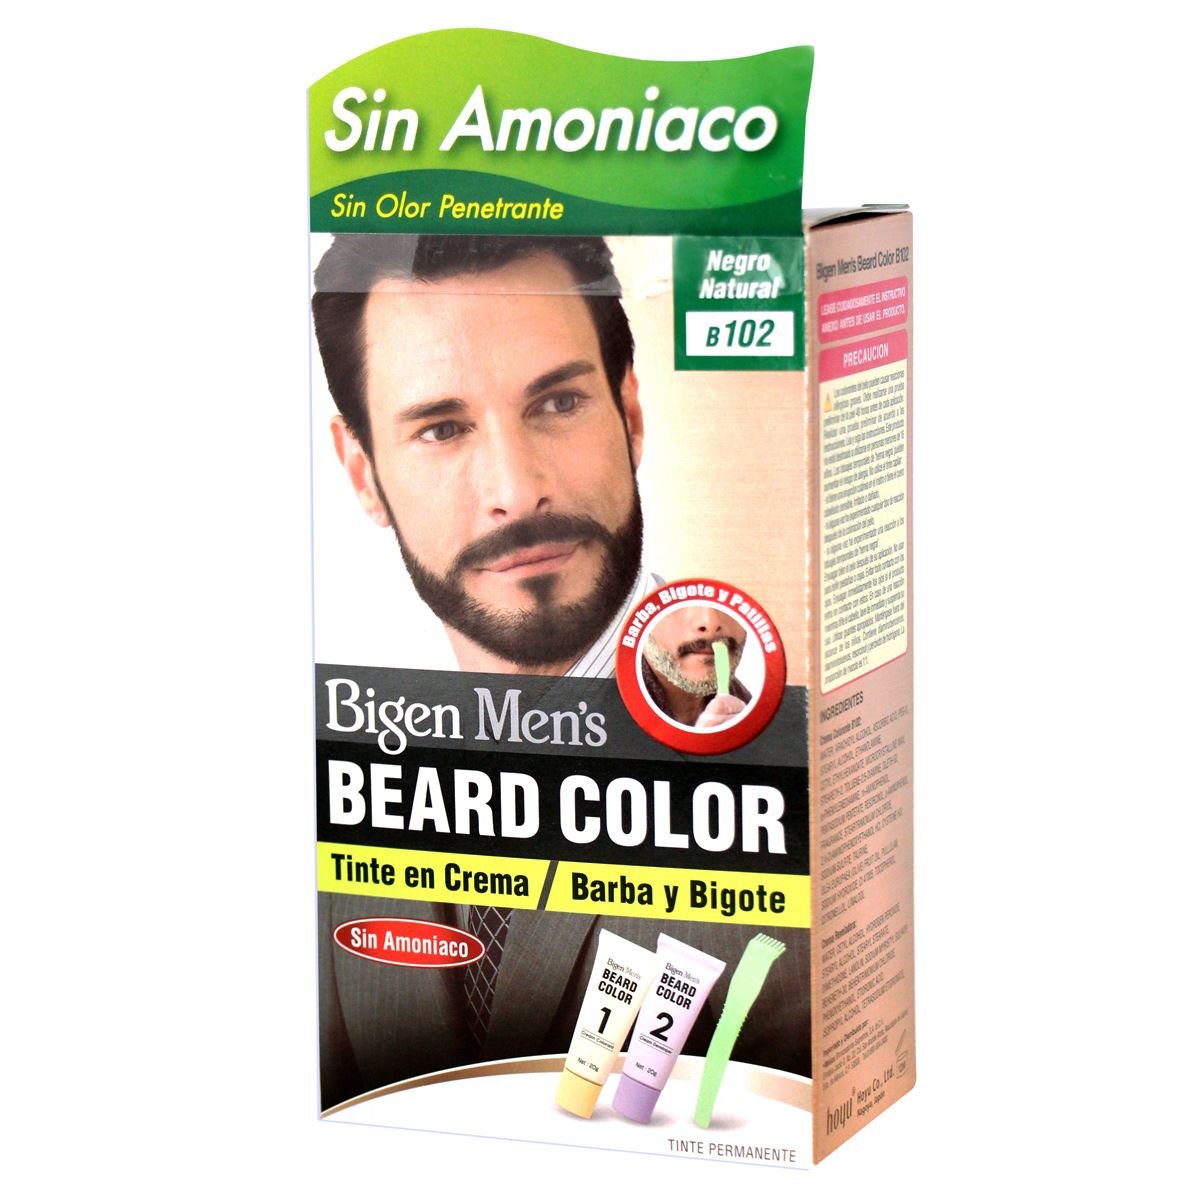 Bigen Coloración para Barba y Bigote color Negro Natural